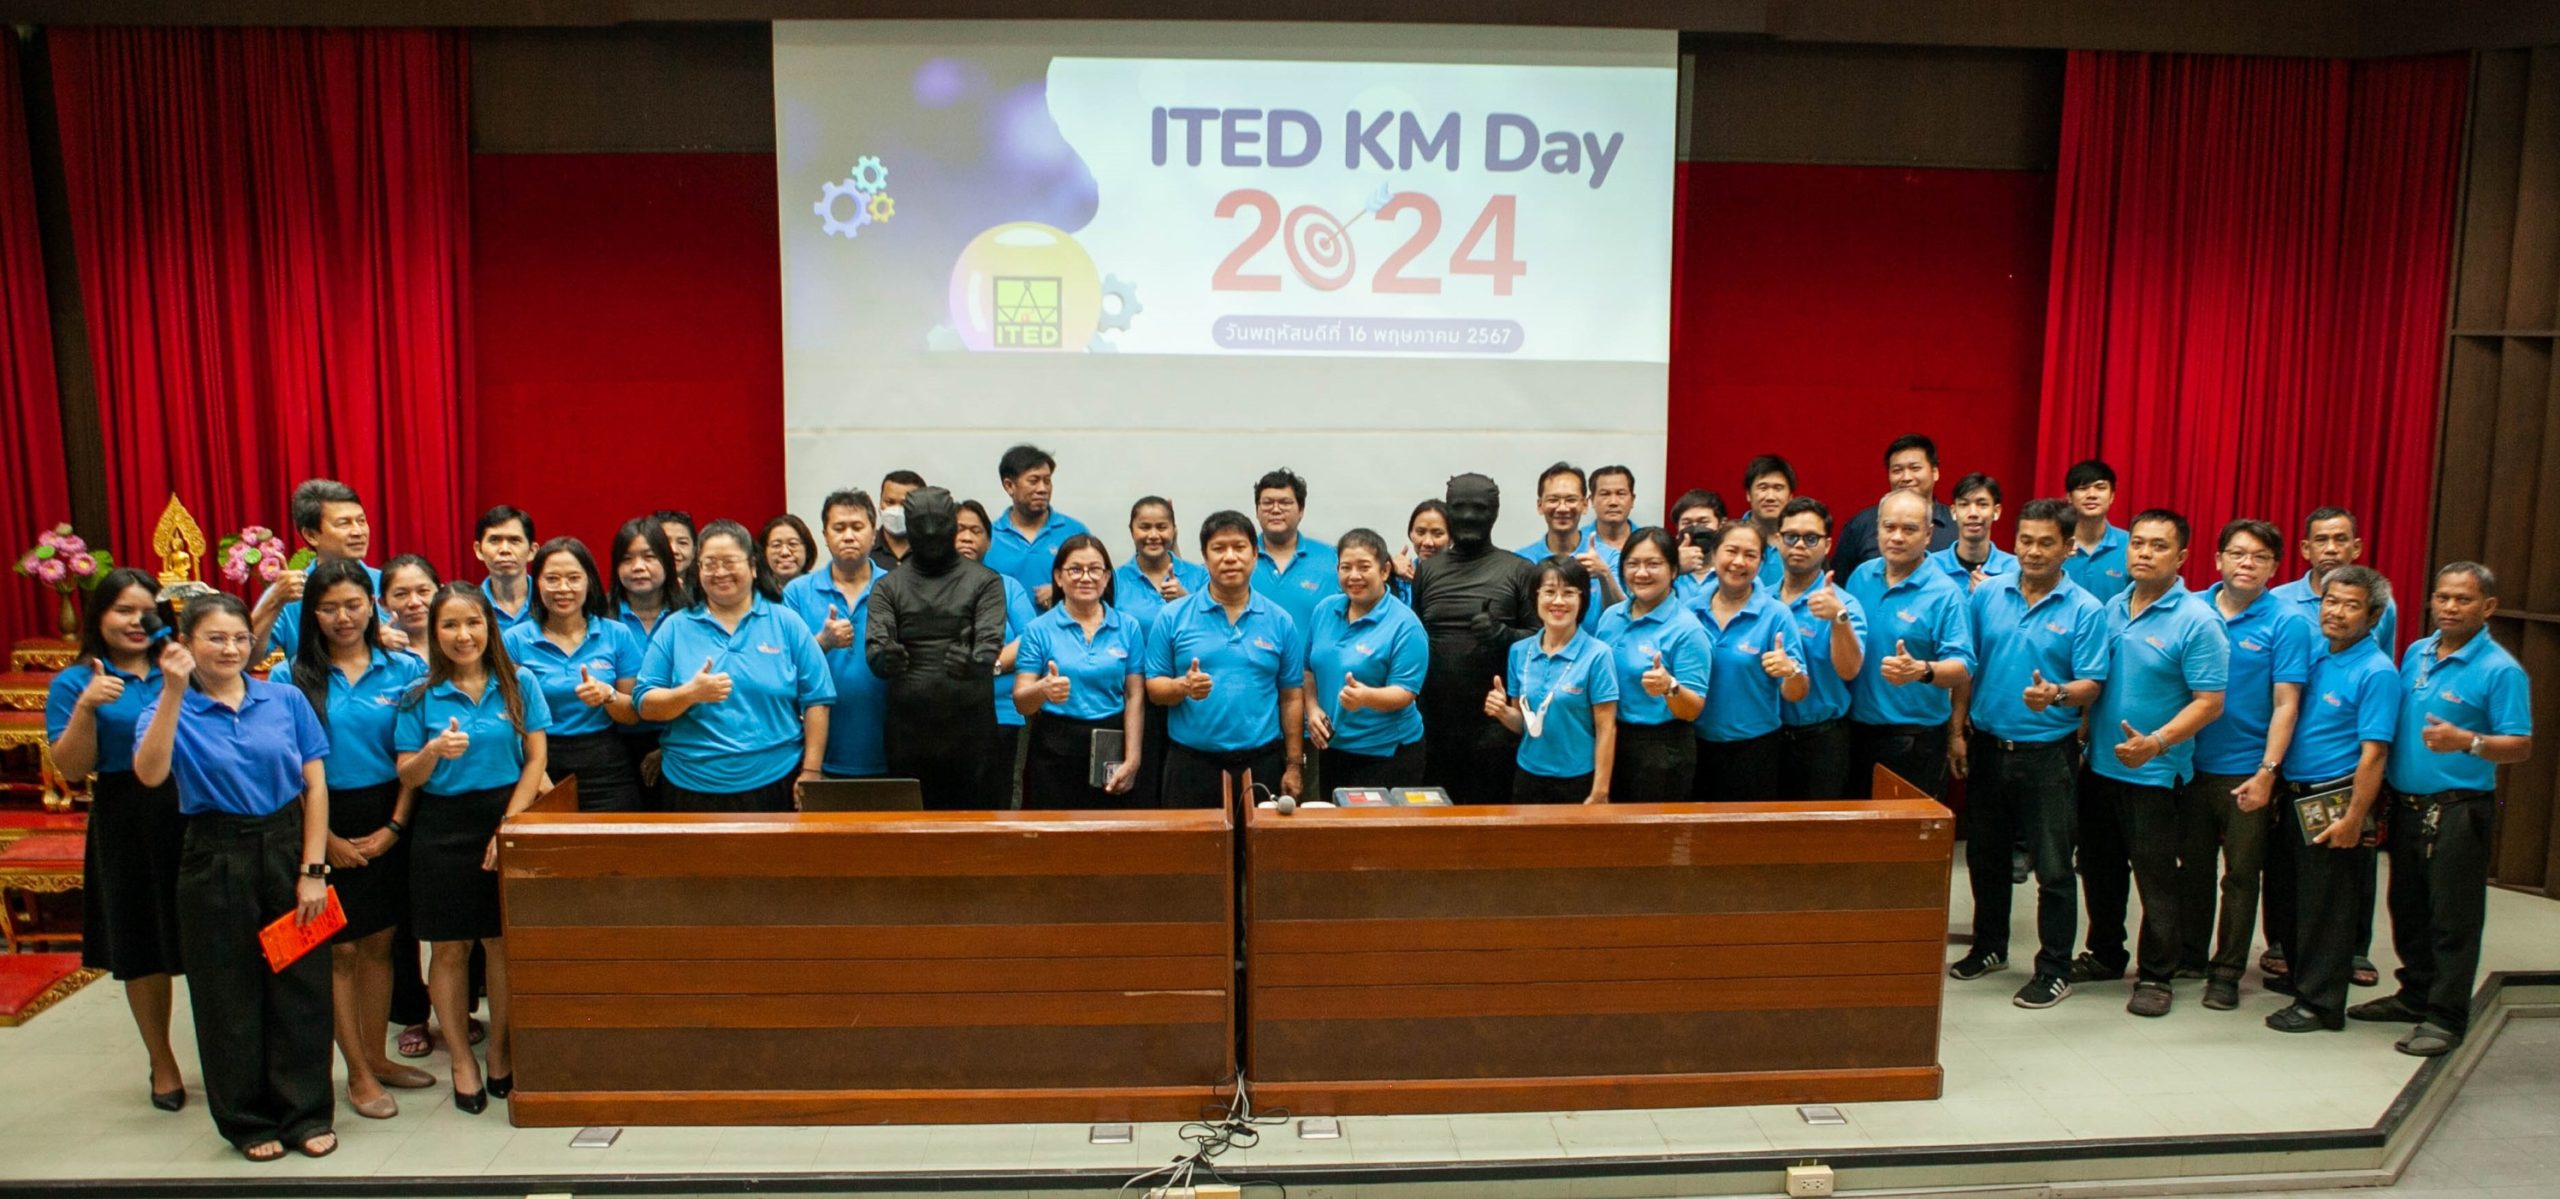 สำนักพัฒนาเทคนิคศึกษา จัดกิจกรรมการแลกเปลี่ยนเรียนรู้ “ITED KM Day 2024”